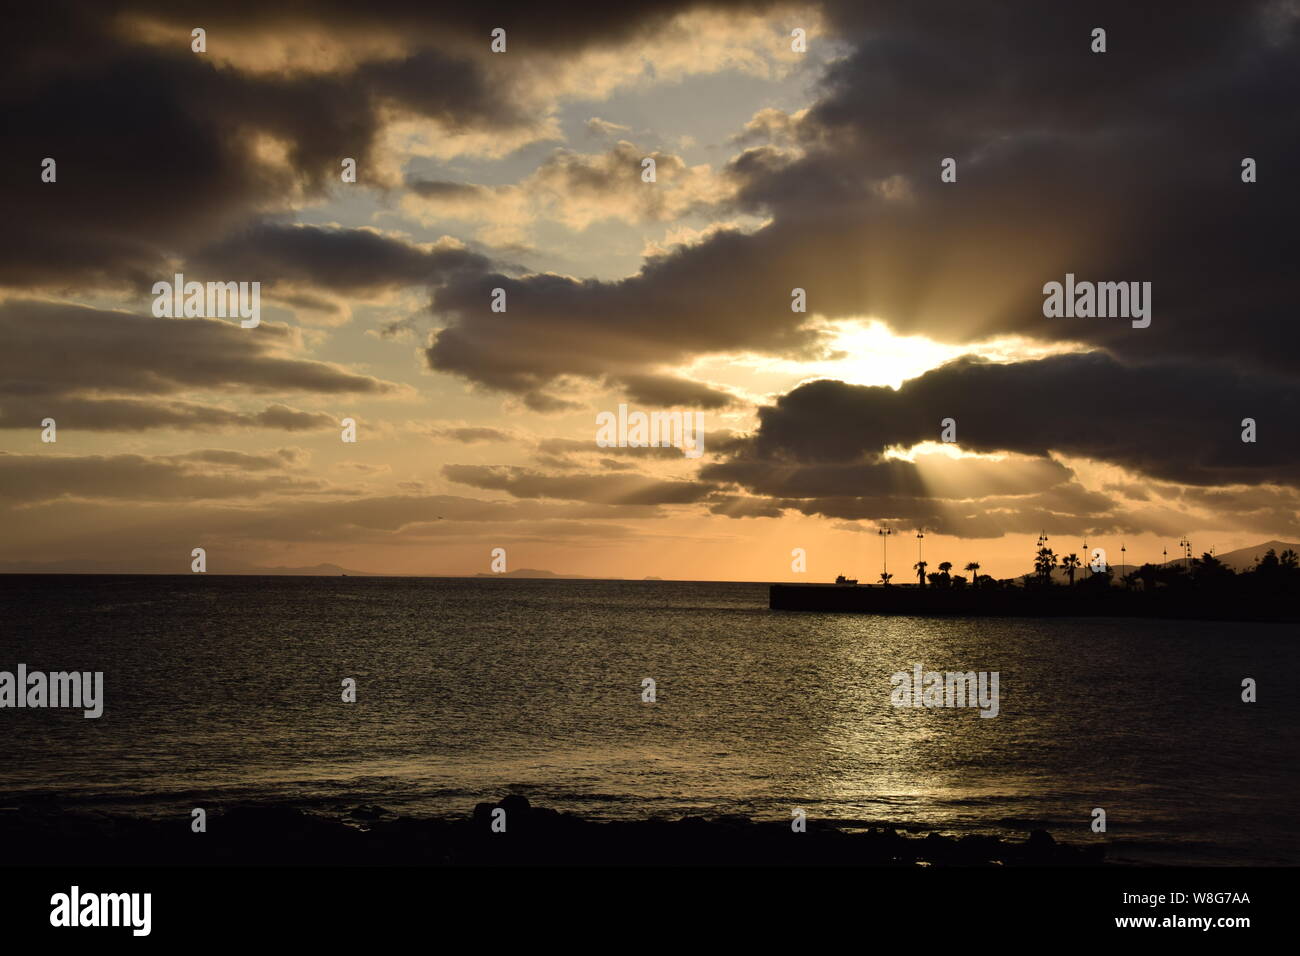 Rayos de sol a través de las nubes cerca de la puesta de sol / hora dorada, sobre el océano y el horizonte del parque frente al mar, Arrecife, Lanzarote Foto de stock